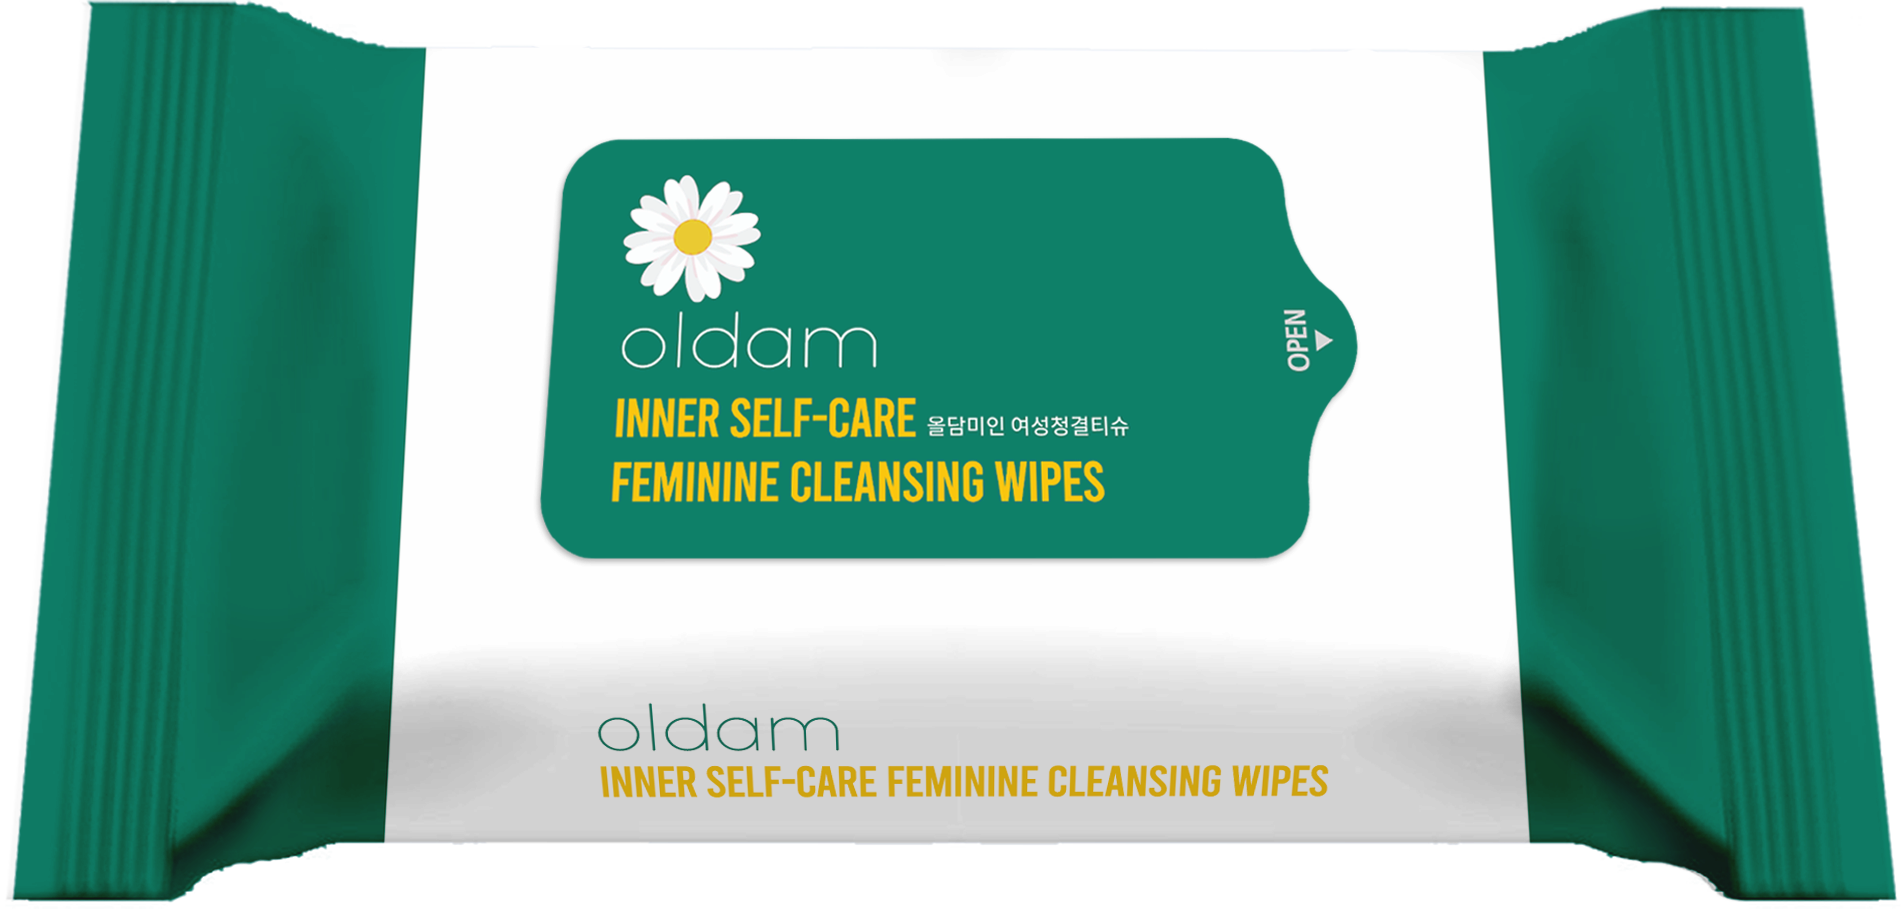 Inner Self-care Feminine Cleansing Wipes